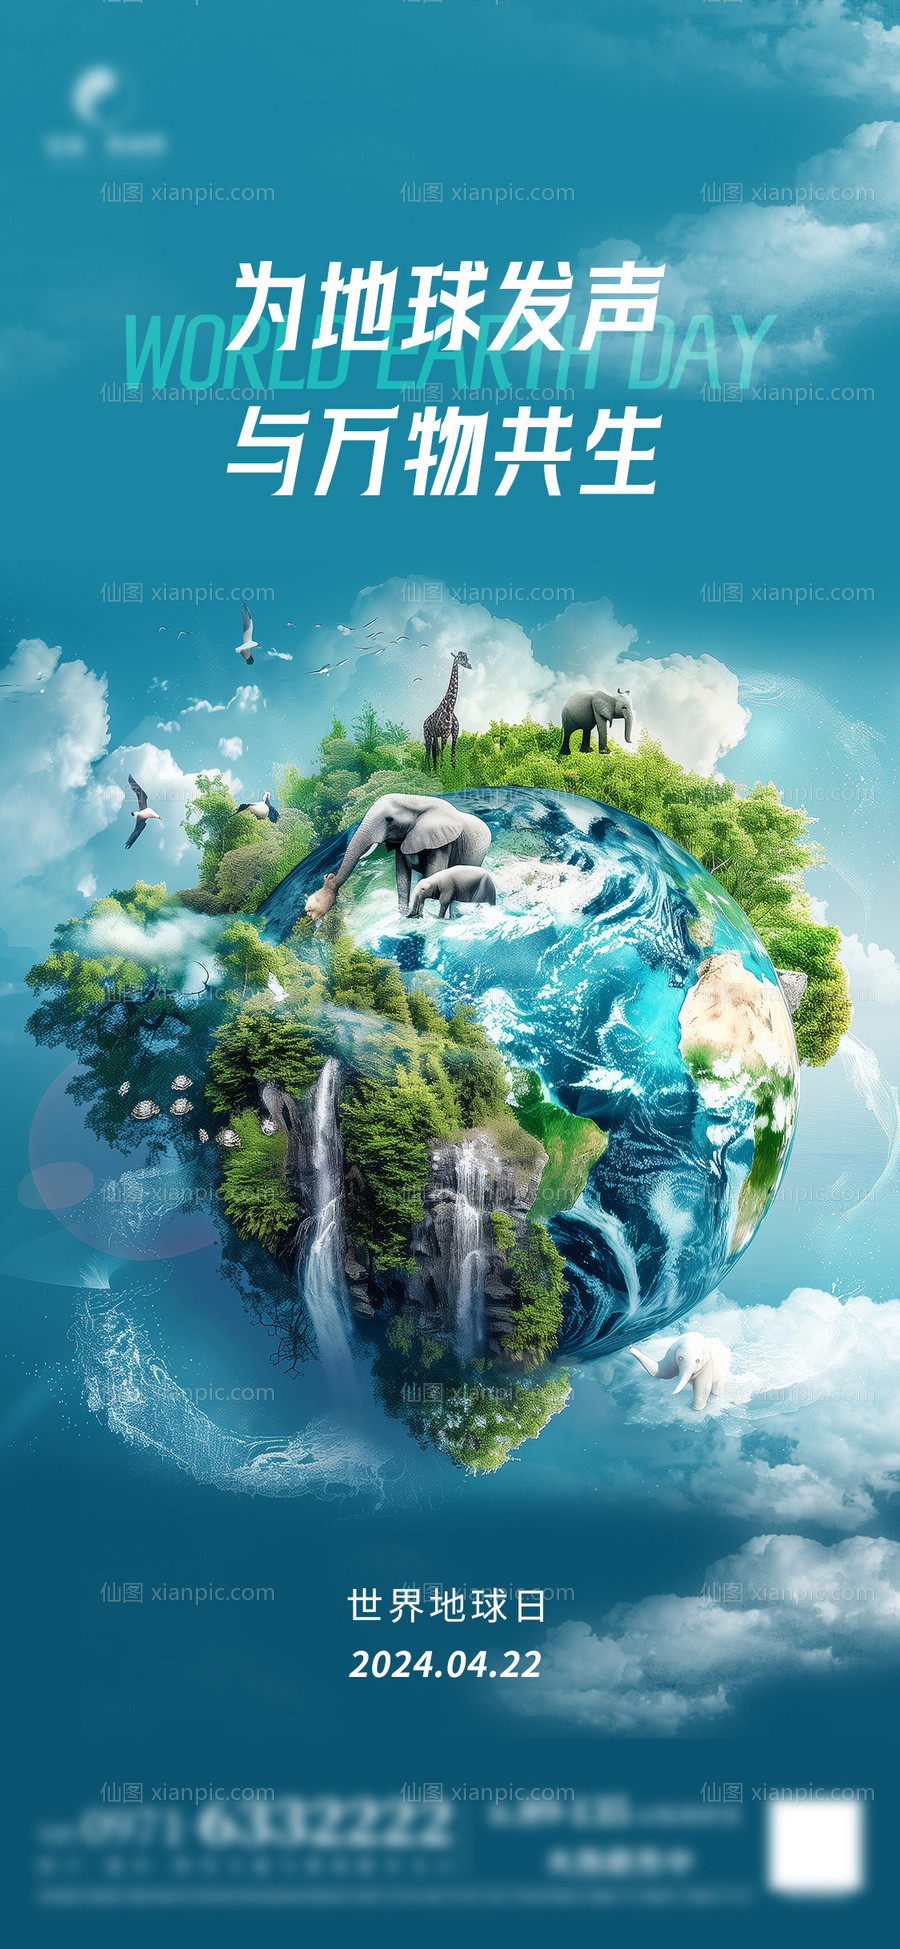 素材乐-世界地球日海报